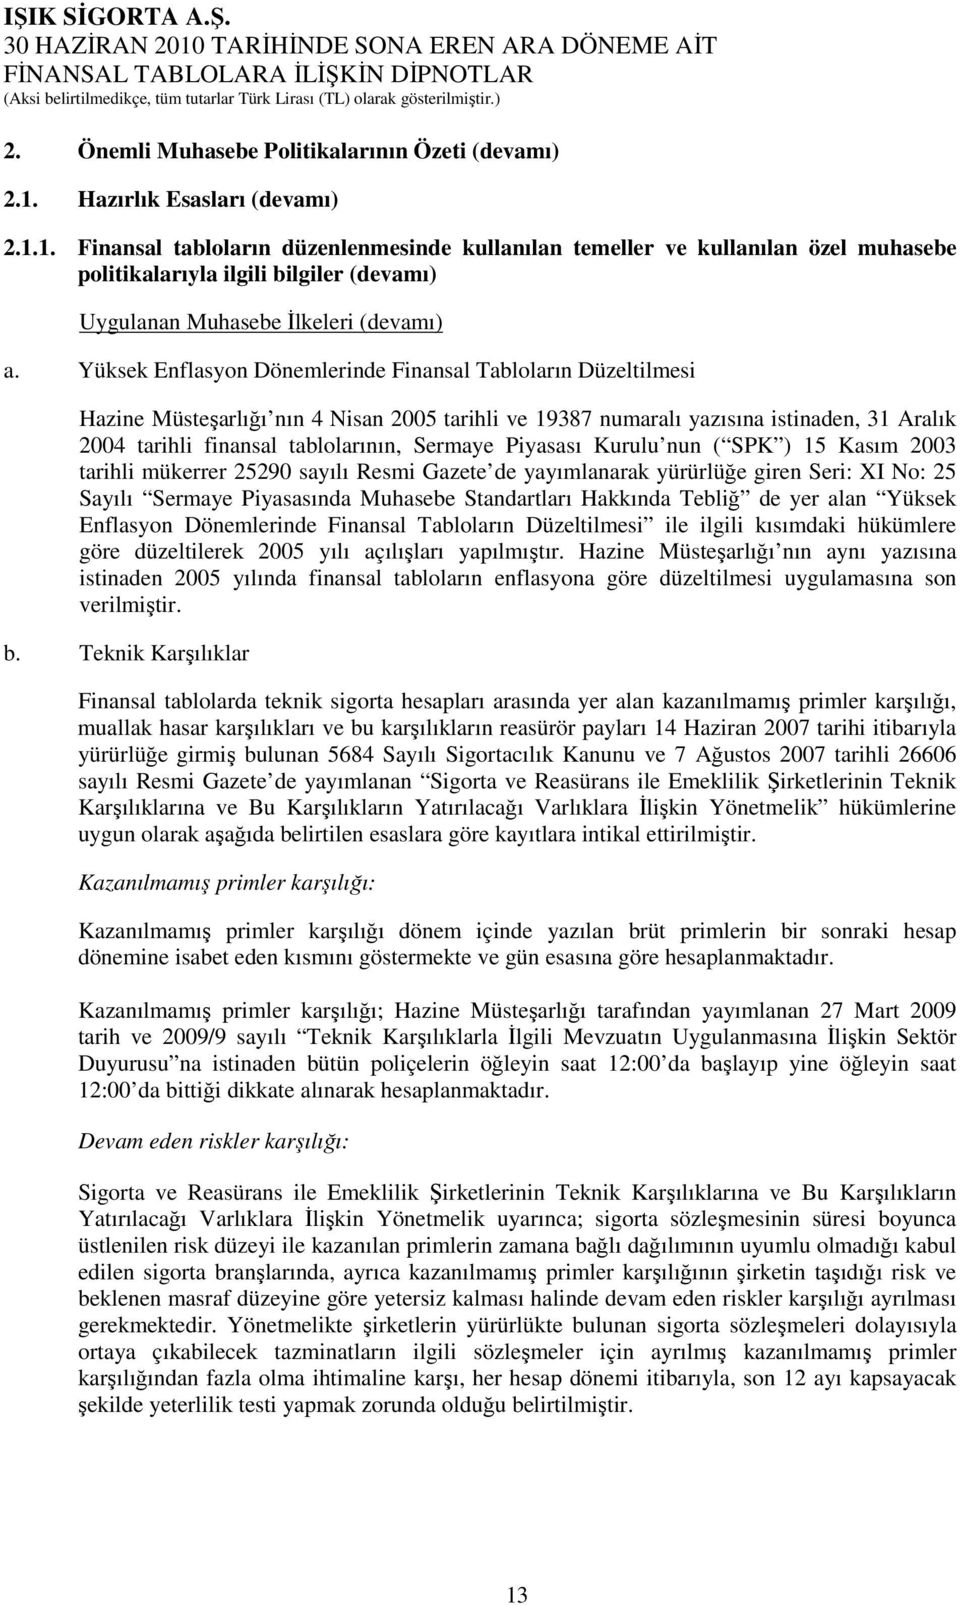 Yüksek Enflasyon Dönemlerinde Finansal Tabloların Düzeltilmesi Hazine Müsteşarlığı nın 4 Nisan 2005 tarihli ve 19387 numaralı yazısına istinaden, 31 Aralık 2004 tarihli finansal tablolarının, Sermaye